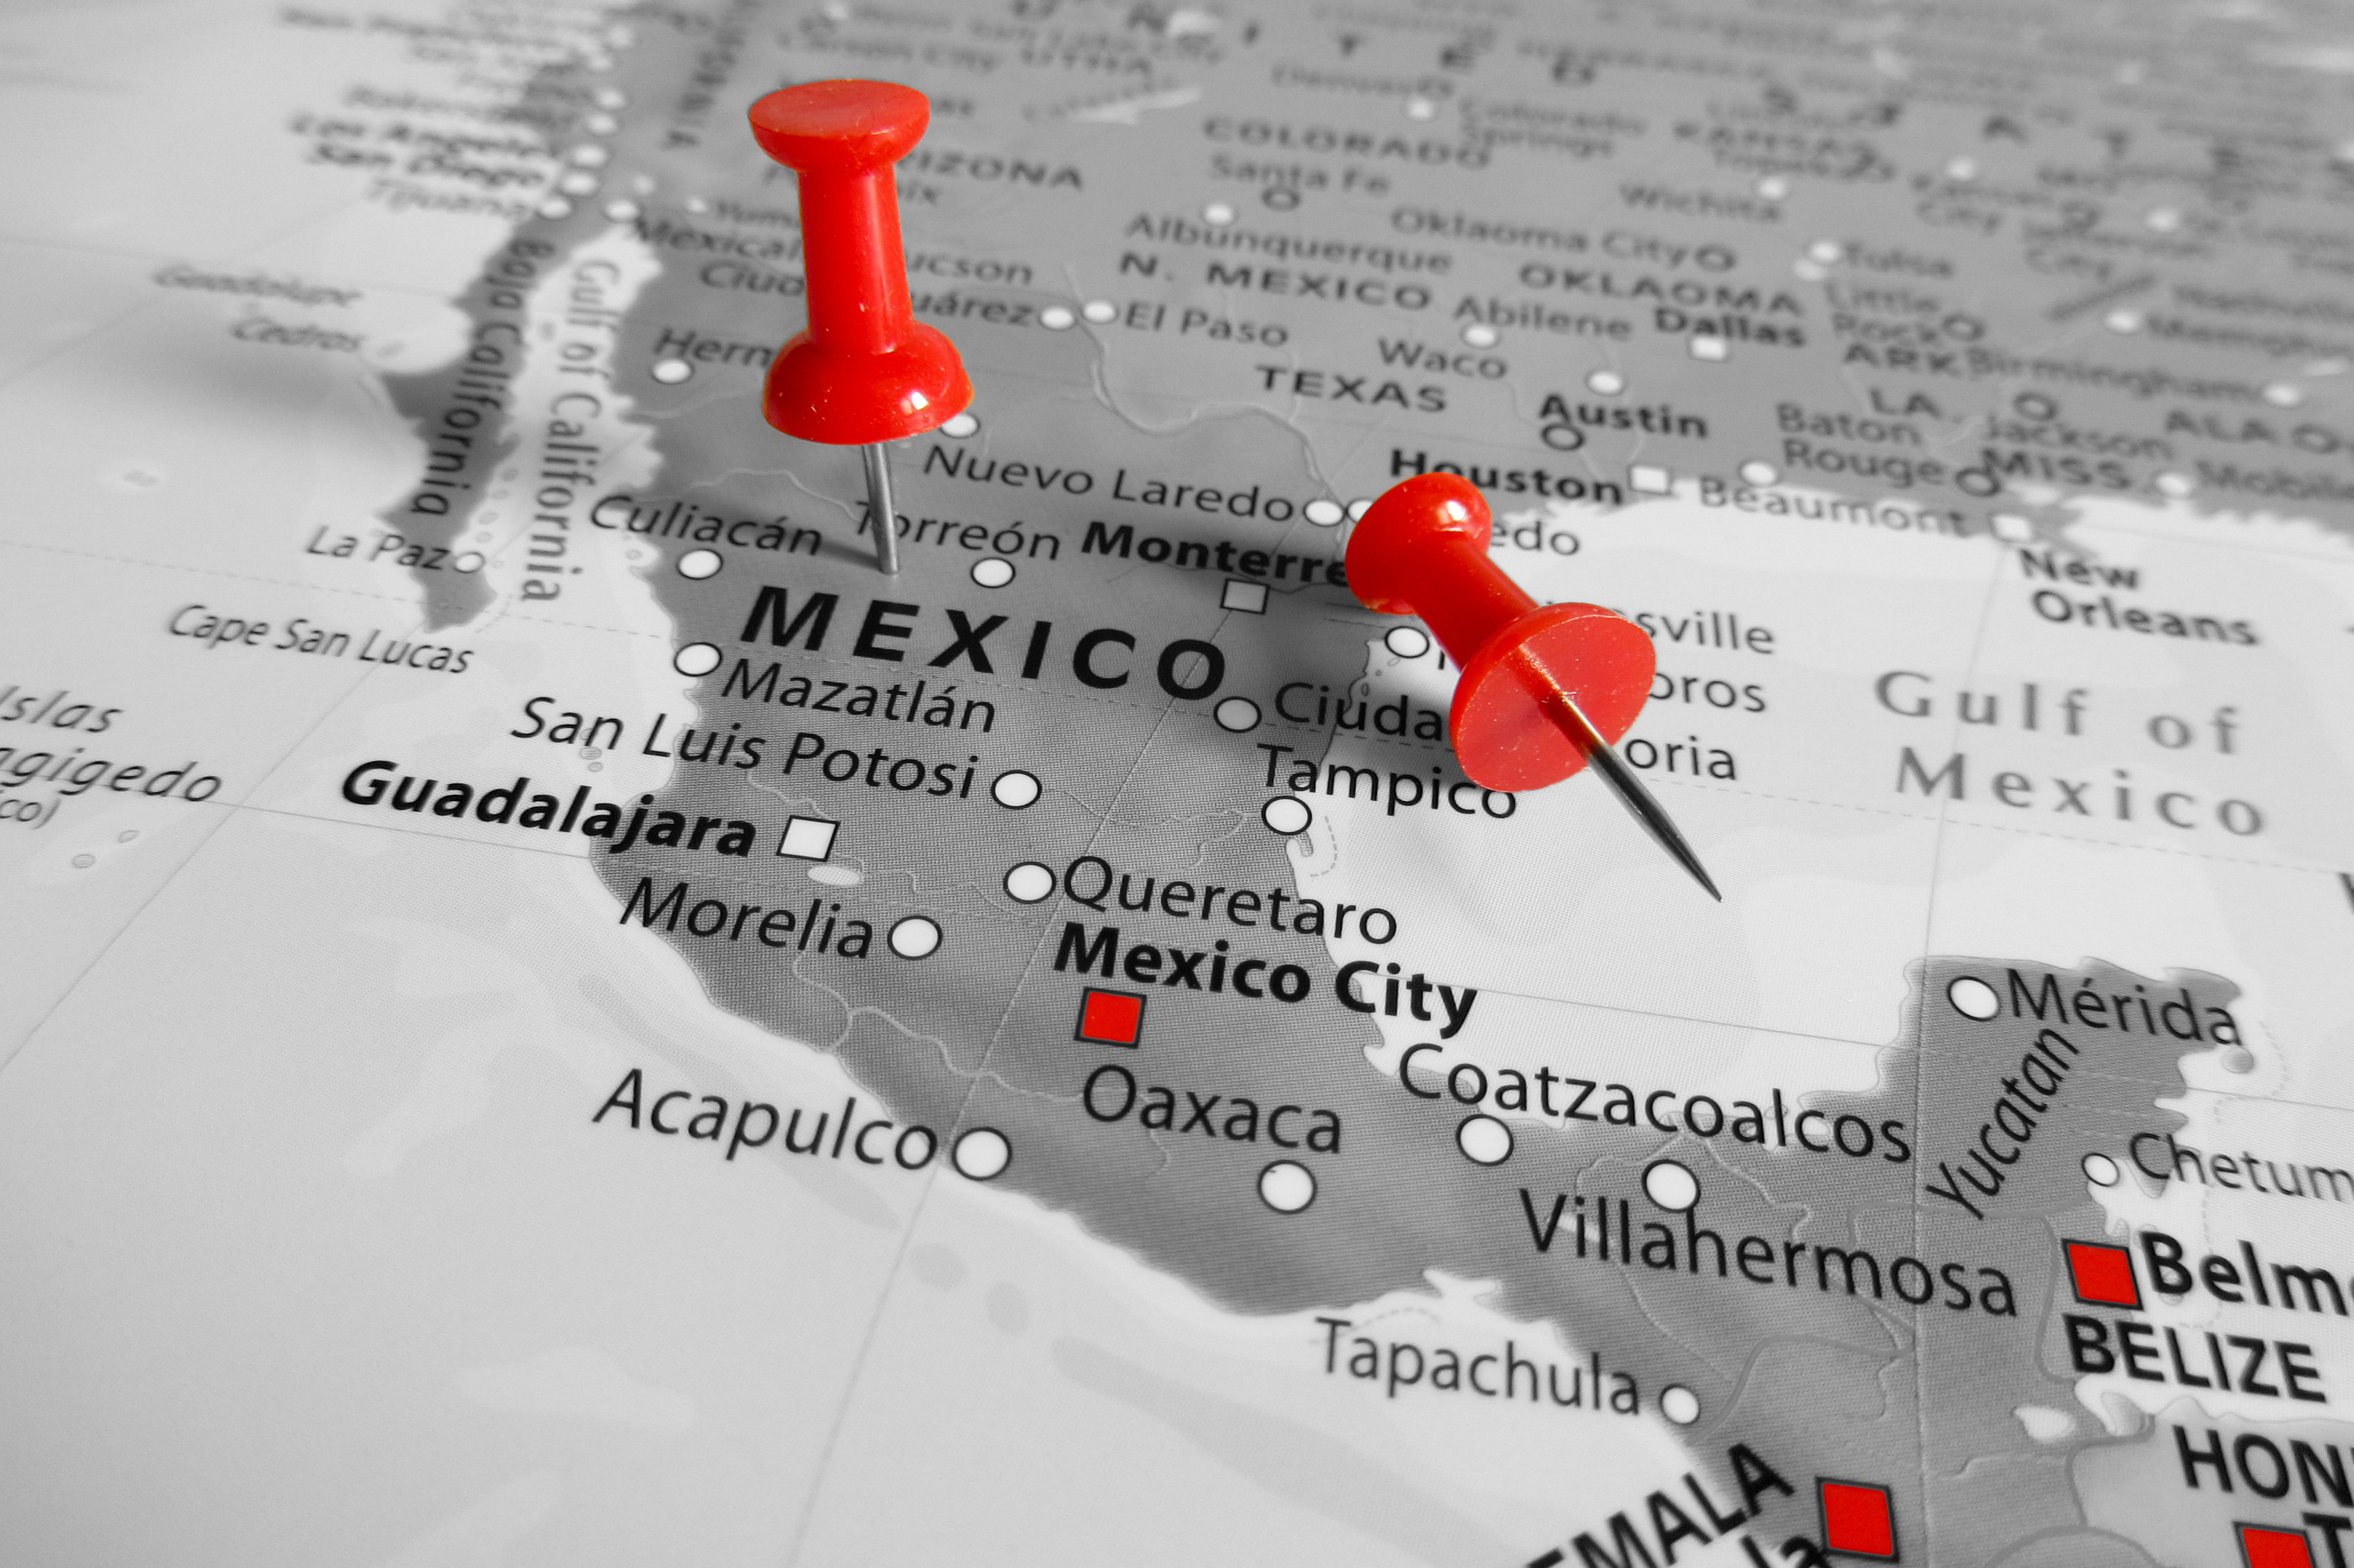 Cluster Industrial - Empresas catalanas de automoción viajan a Guanajuato en misión empresarial